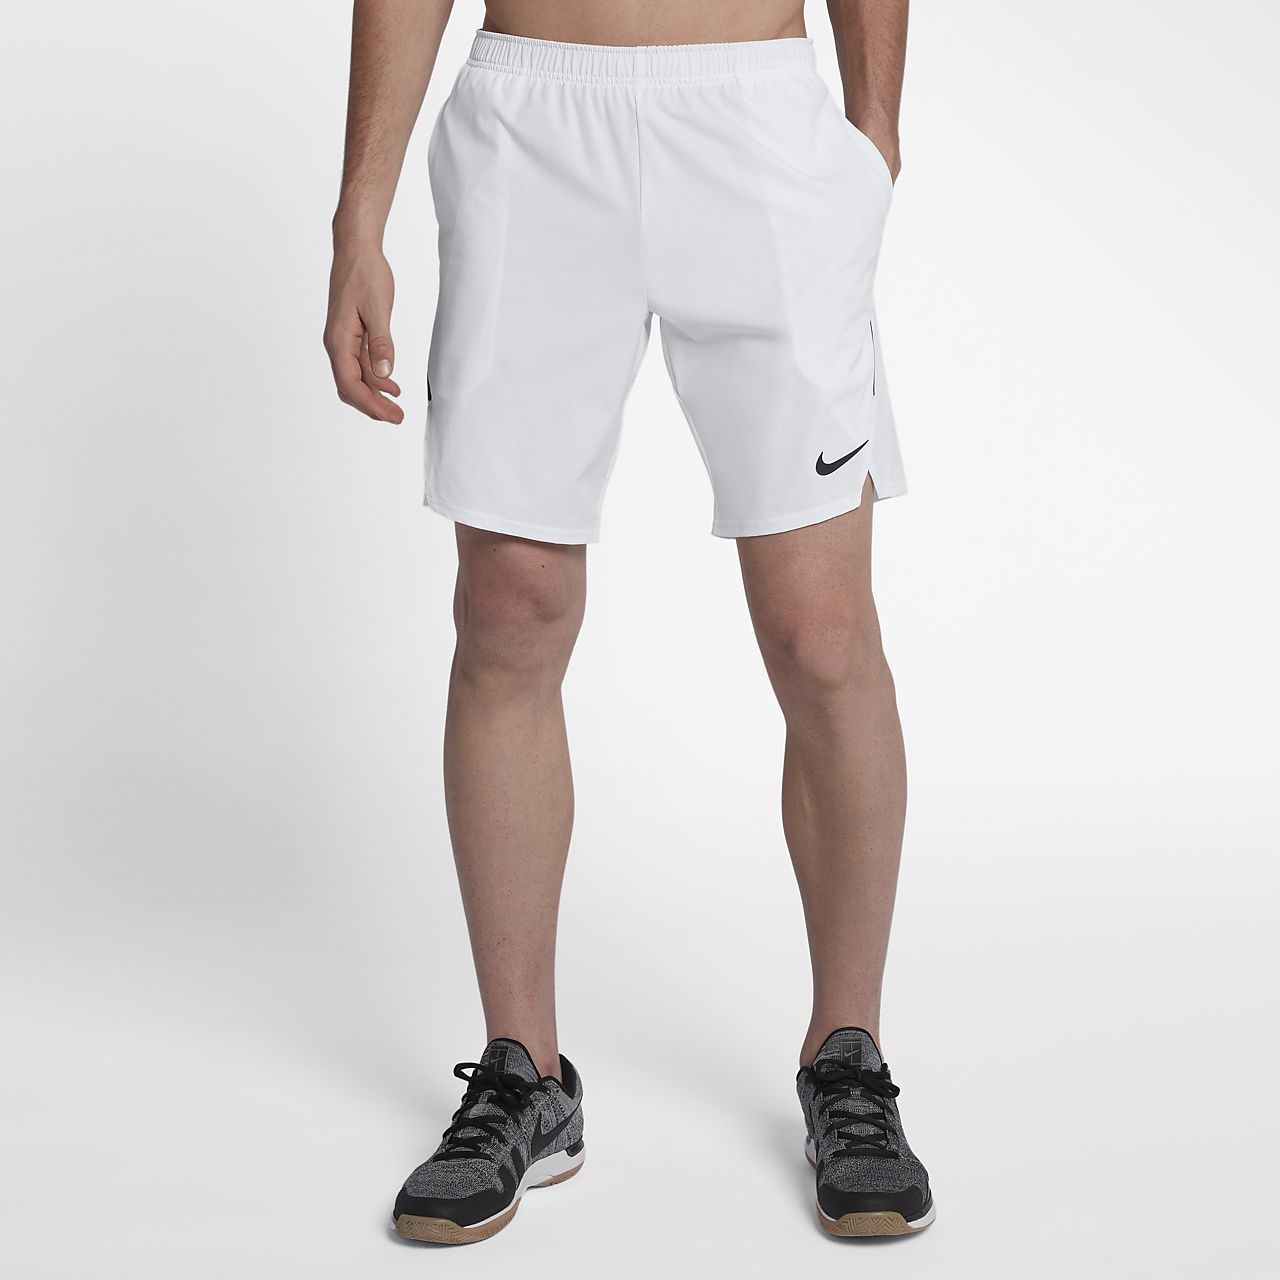 nike tennis shorts men